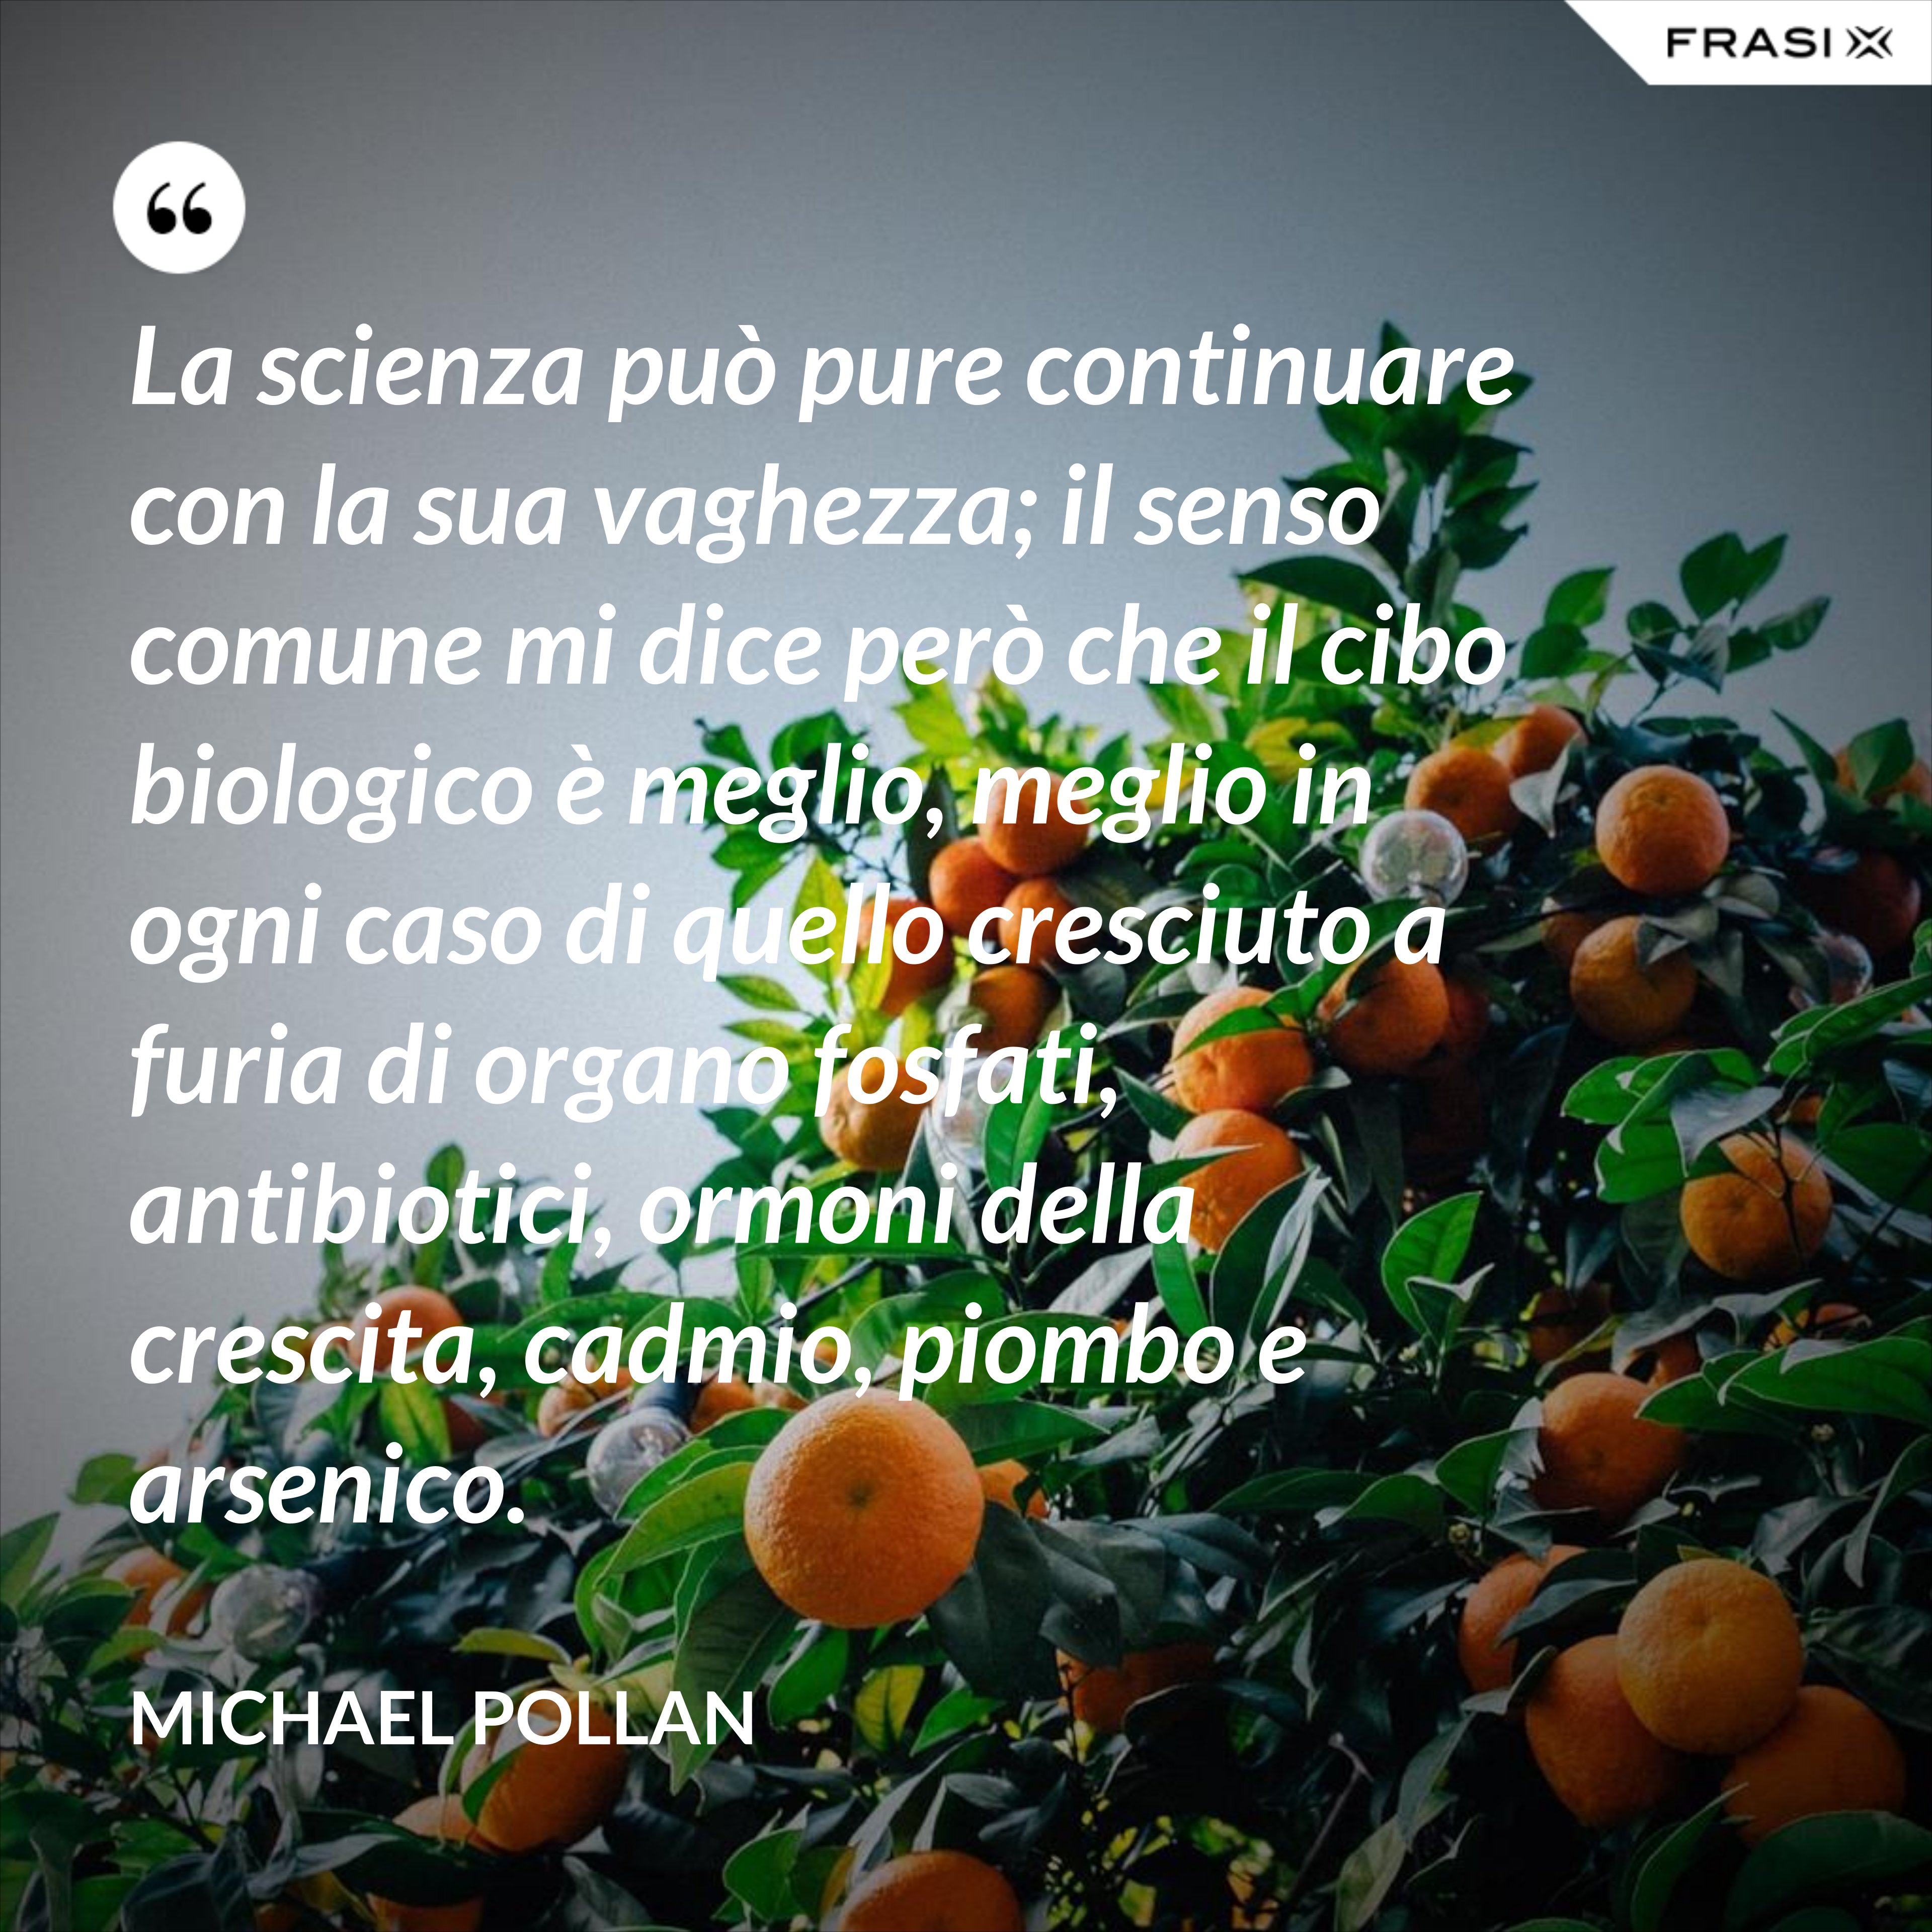 La scienza può pure continuare con la sua vaghezza; il senso comune mi dice però che il cibo biologico è meglio, meglio in ogni caso di quello cresciuto a furia di organo fosfati, antibiotici, ormoni della crescita, cadmio, piombo e arsenico. - Michael Pollan